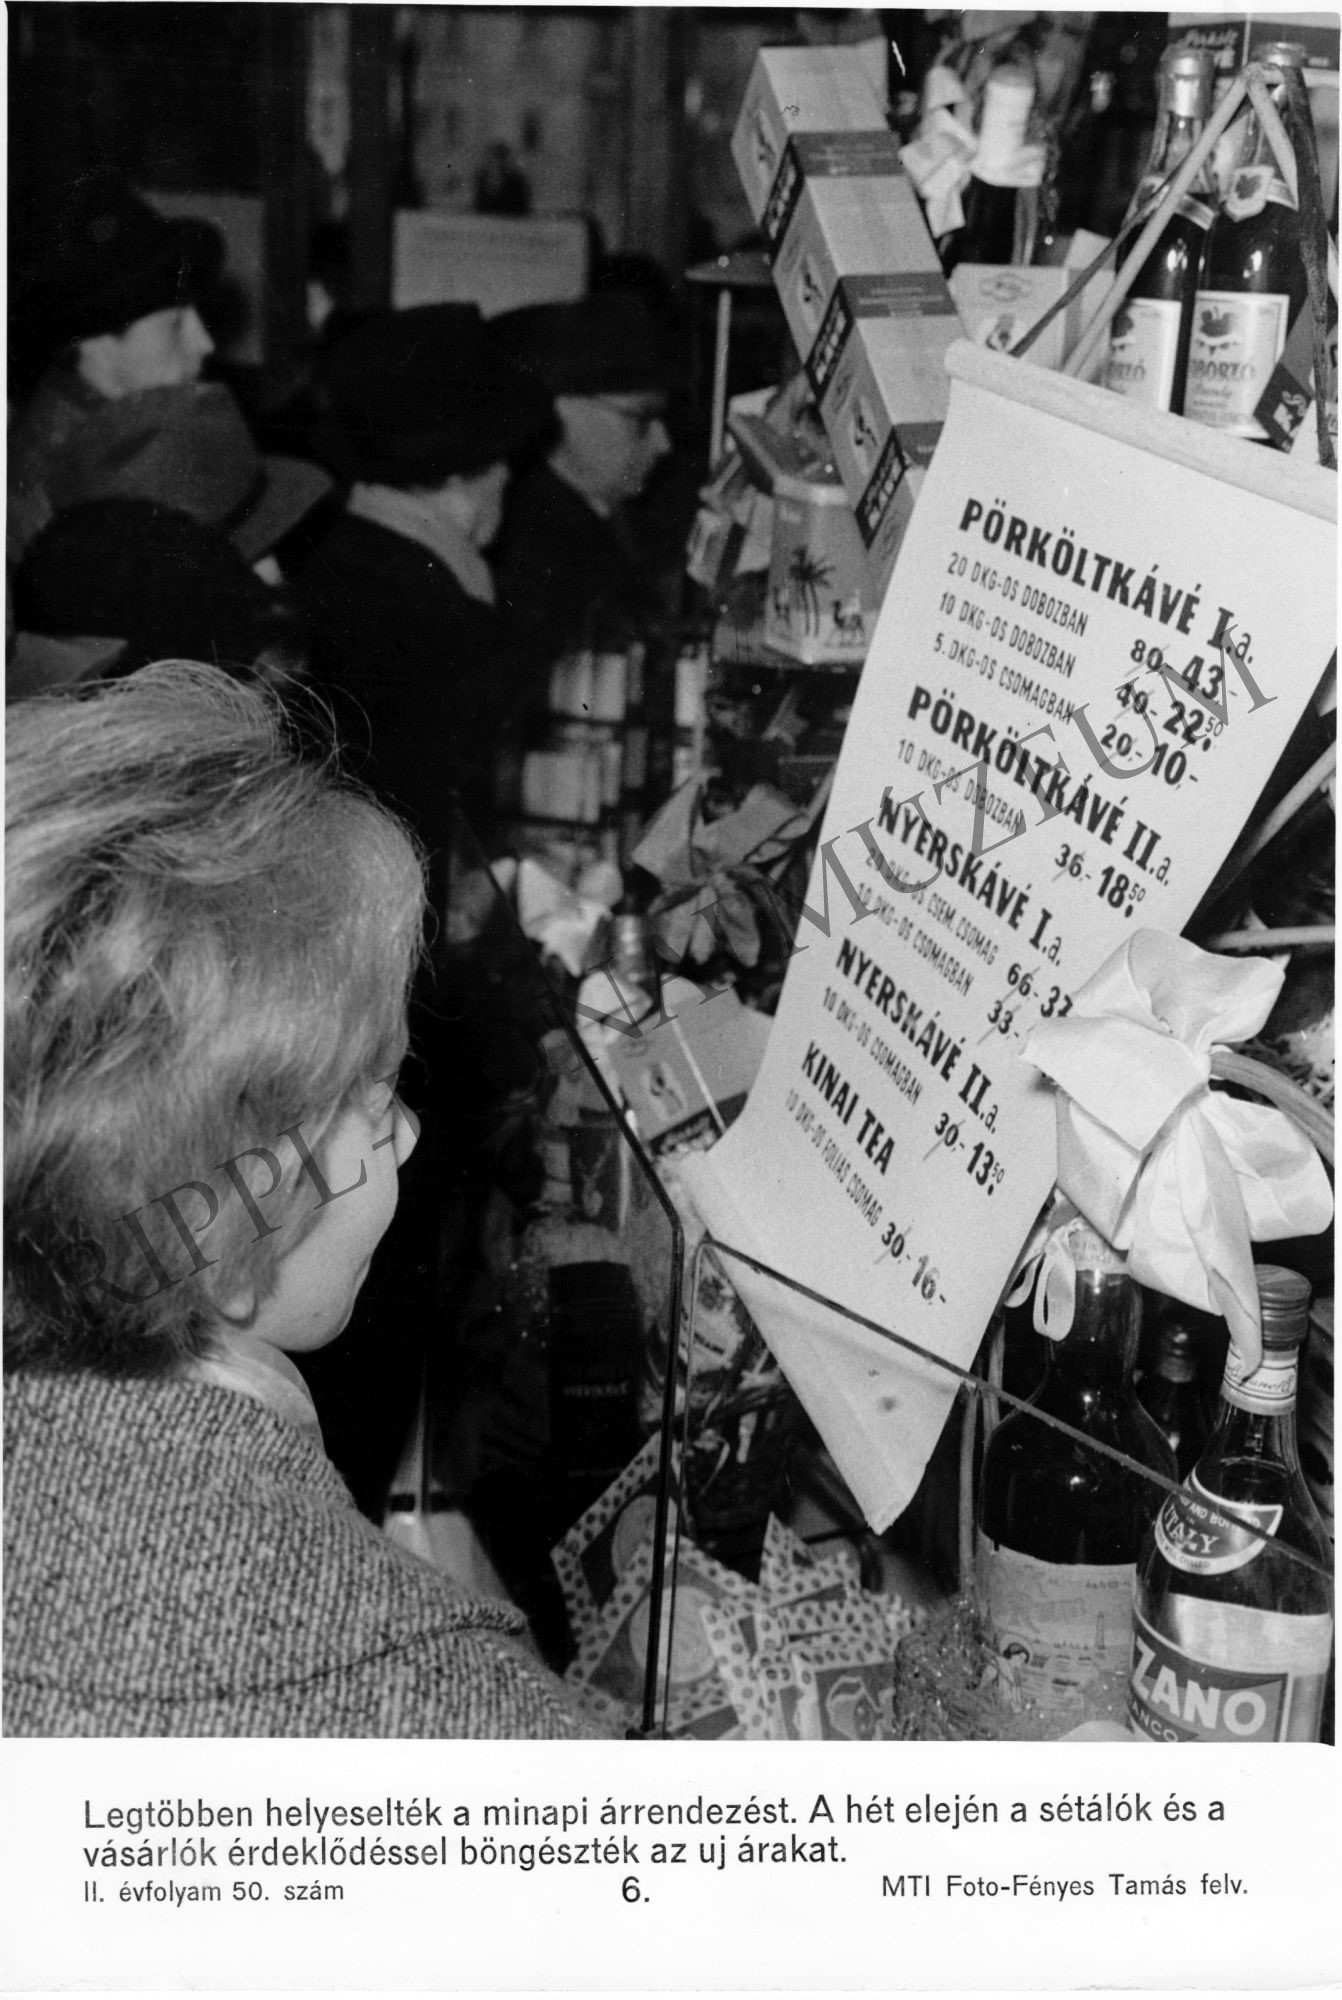 Árrendezés. A vásárlók a Csemege üzlet új árait böngészik. (Rippl-Rónai Múzeum CC BY-NC-SA)